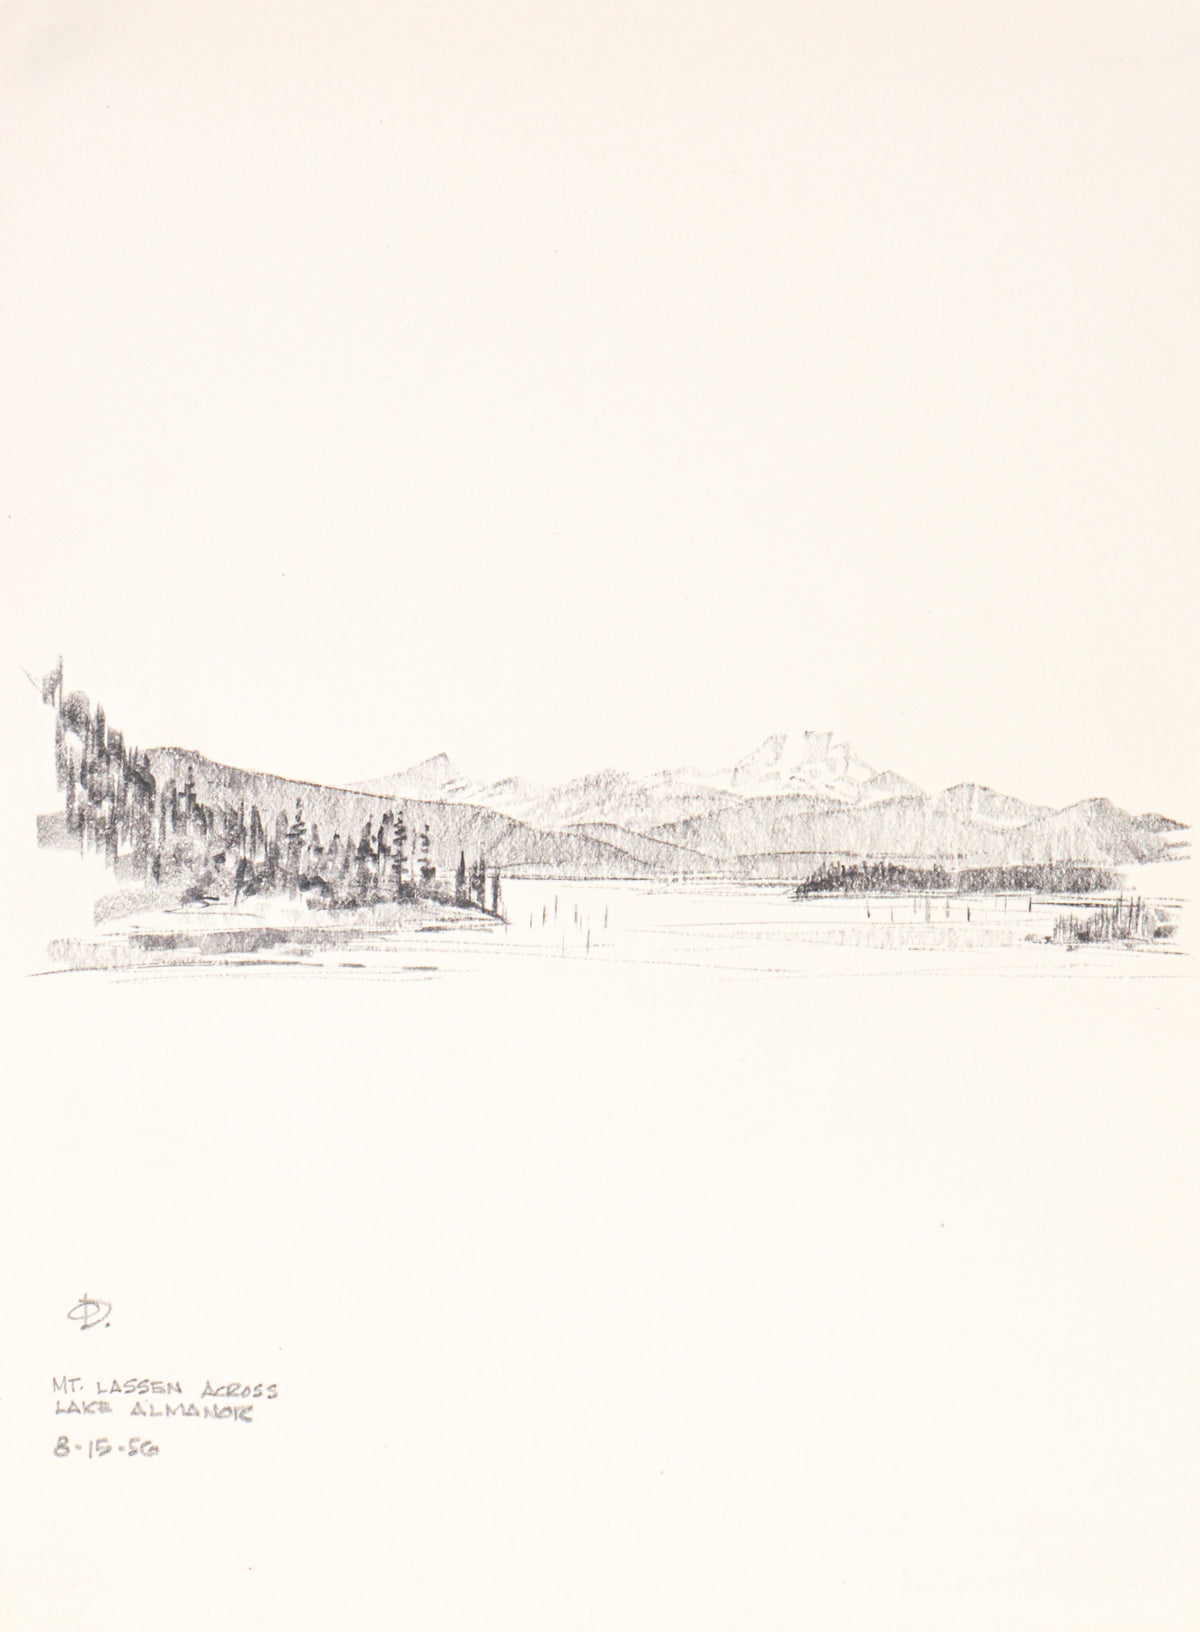 &lt;i&gt;Mt. Lassen across Lake Almanor&lt;/i&gt;&lt;br&gt;1986 Graphite&lt;br&gt;&lt;br&gt;#C3156